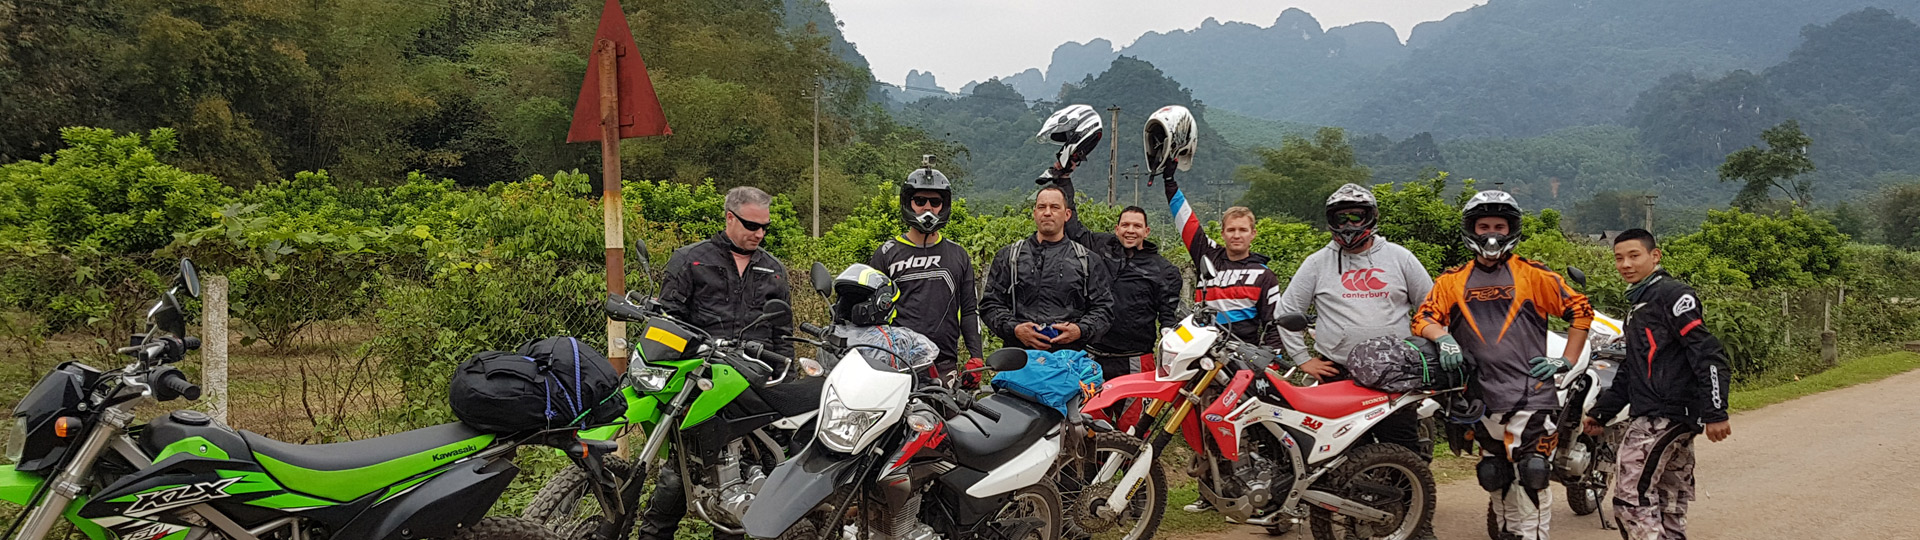 Vietnam Motorbike Tours 3